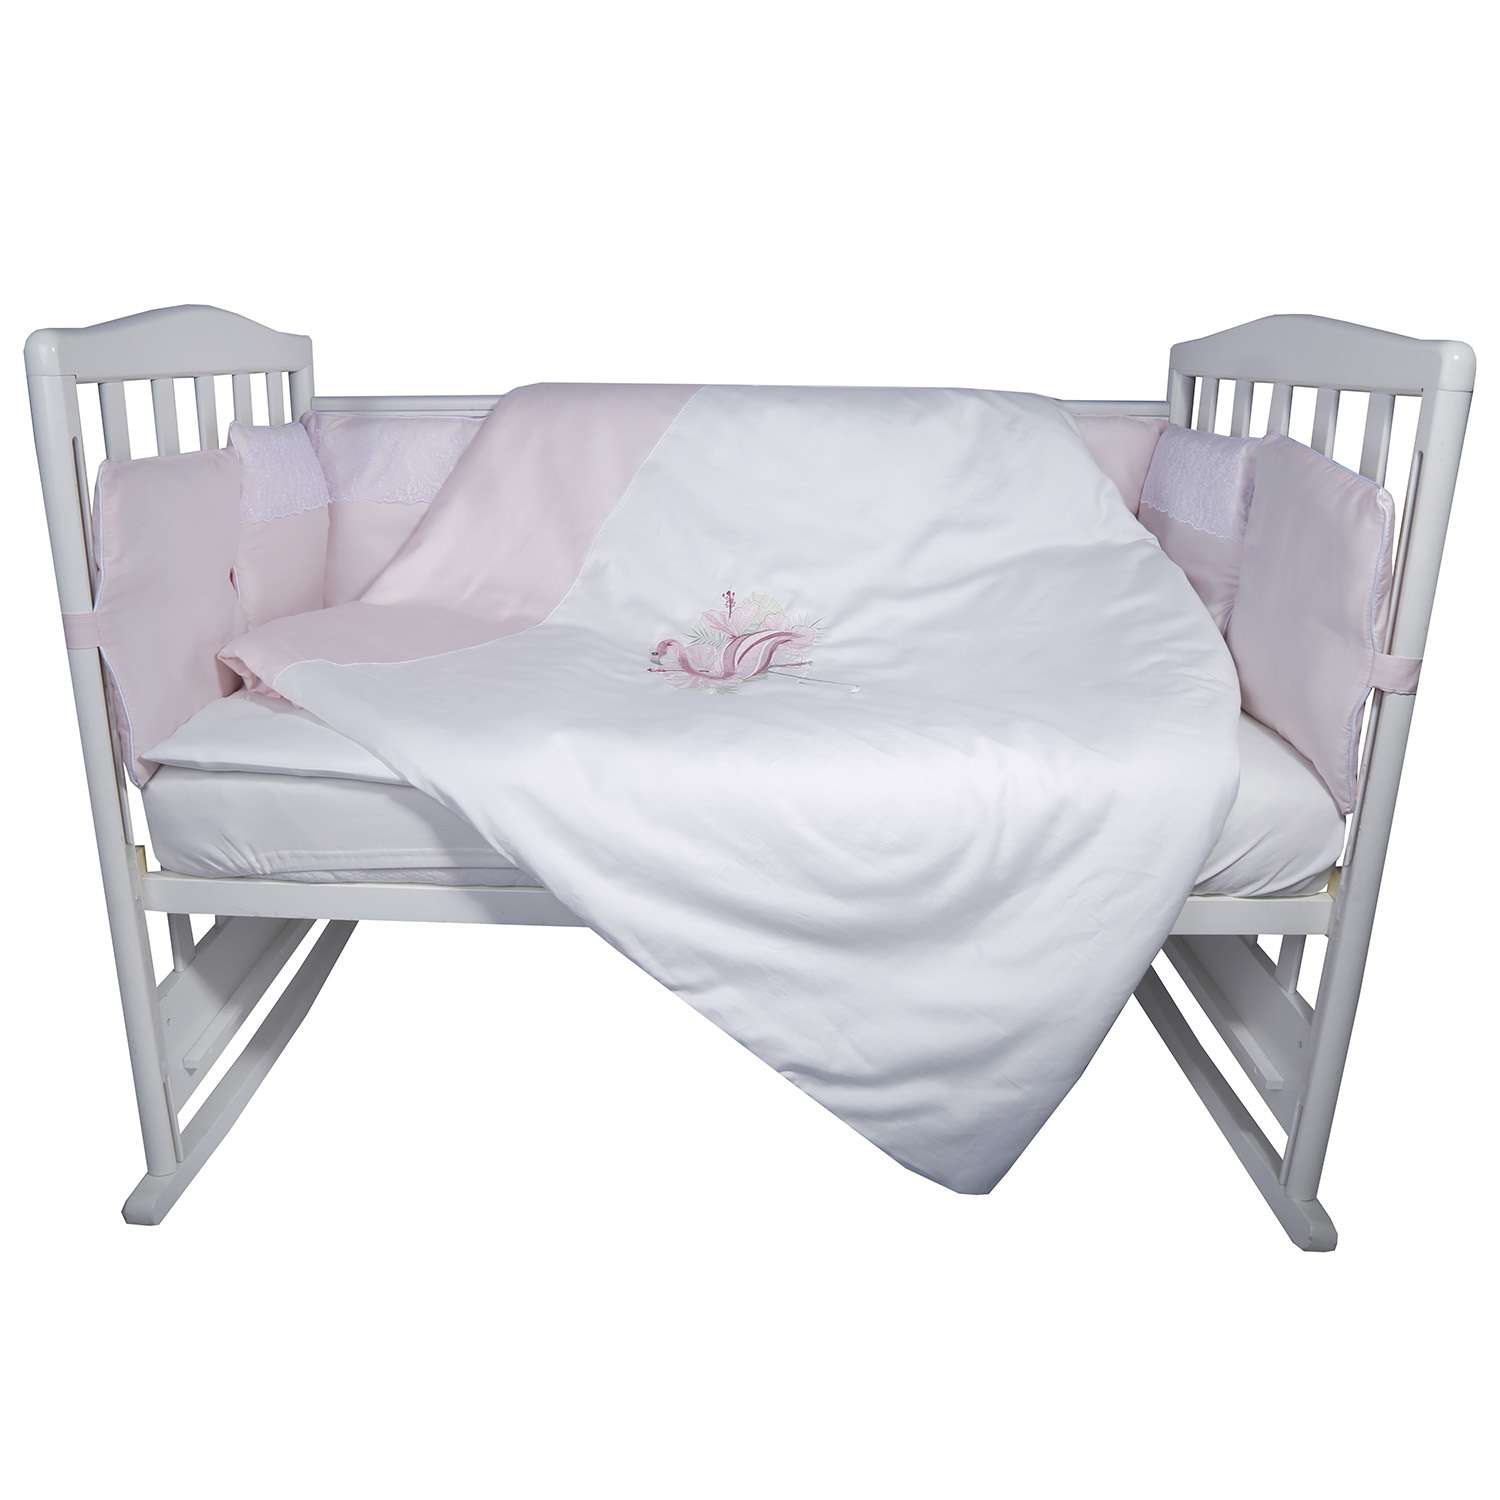 Комплект постельного белья Эдельвейс Фламинго 4предмета 10417 - фото 1